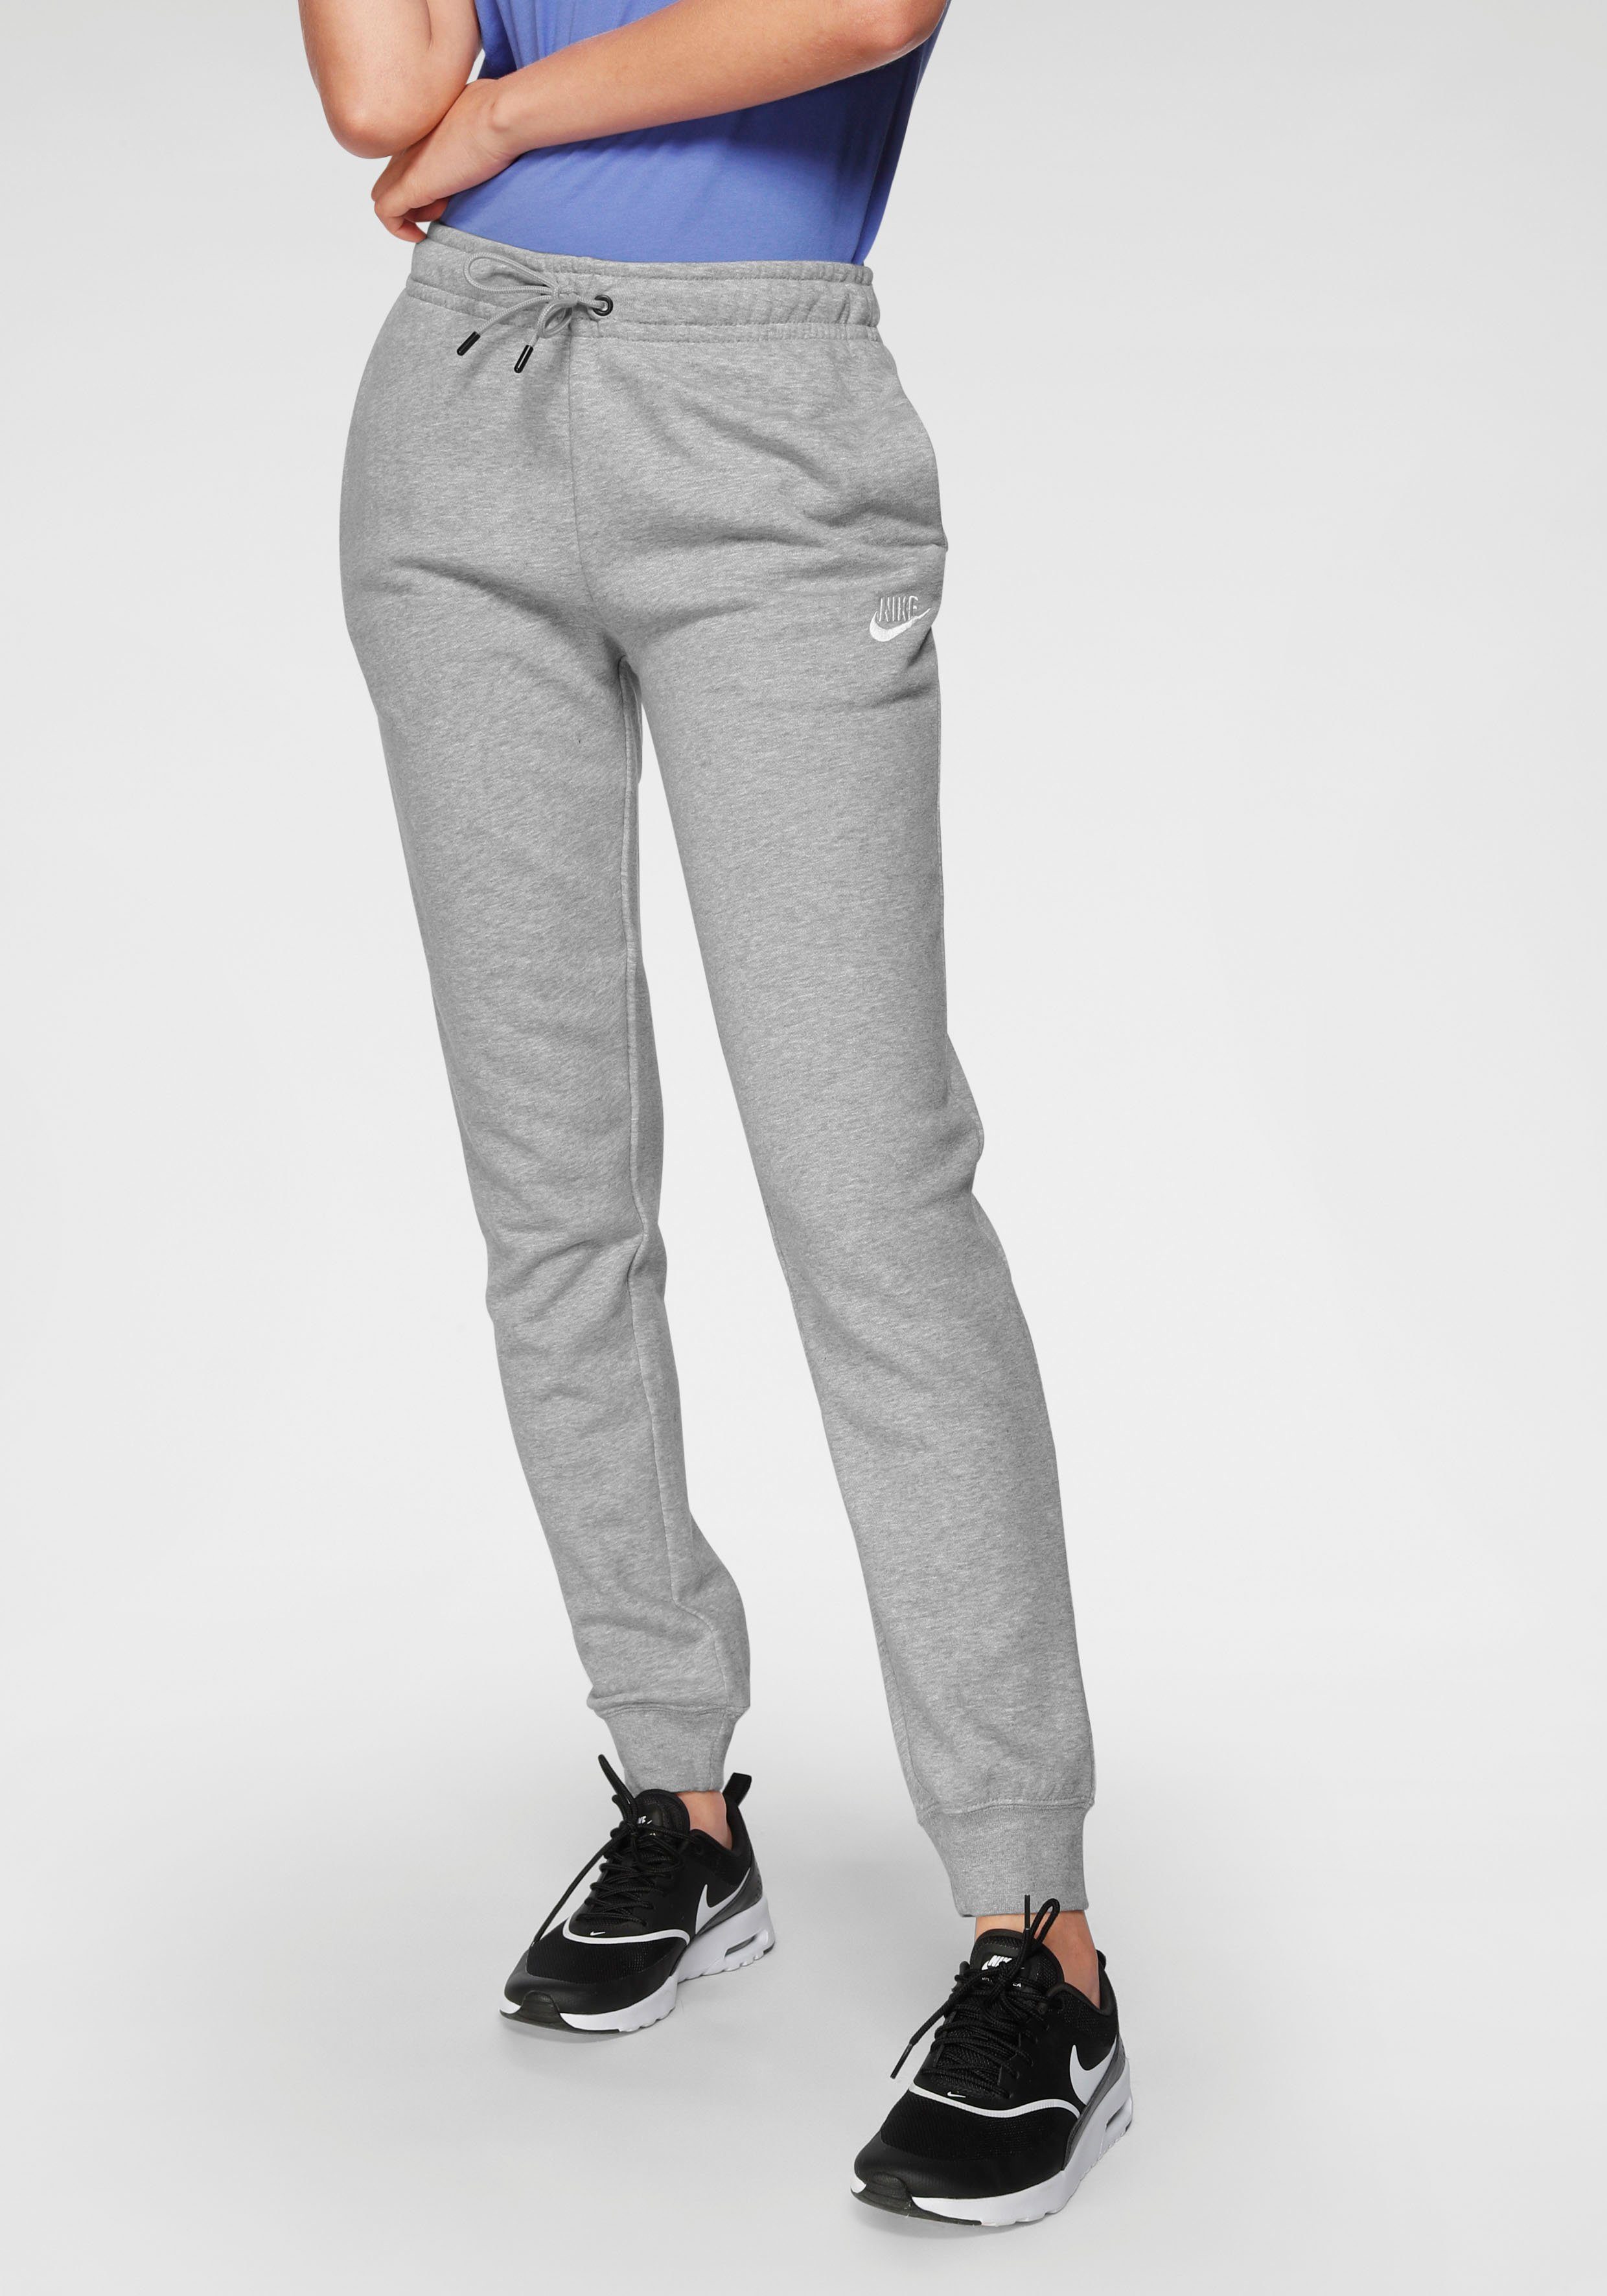 grau-meliert Sportswear PANTS WOMENS ESSENTIAL Jogginghose Nike FLEECE